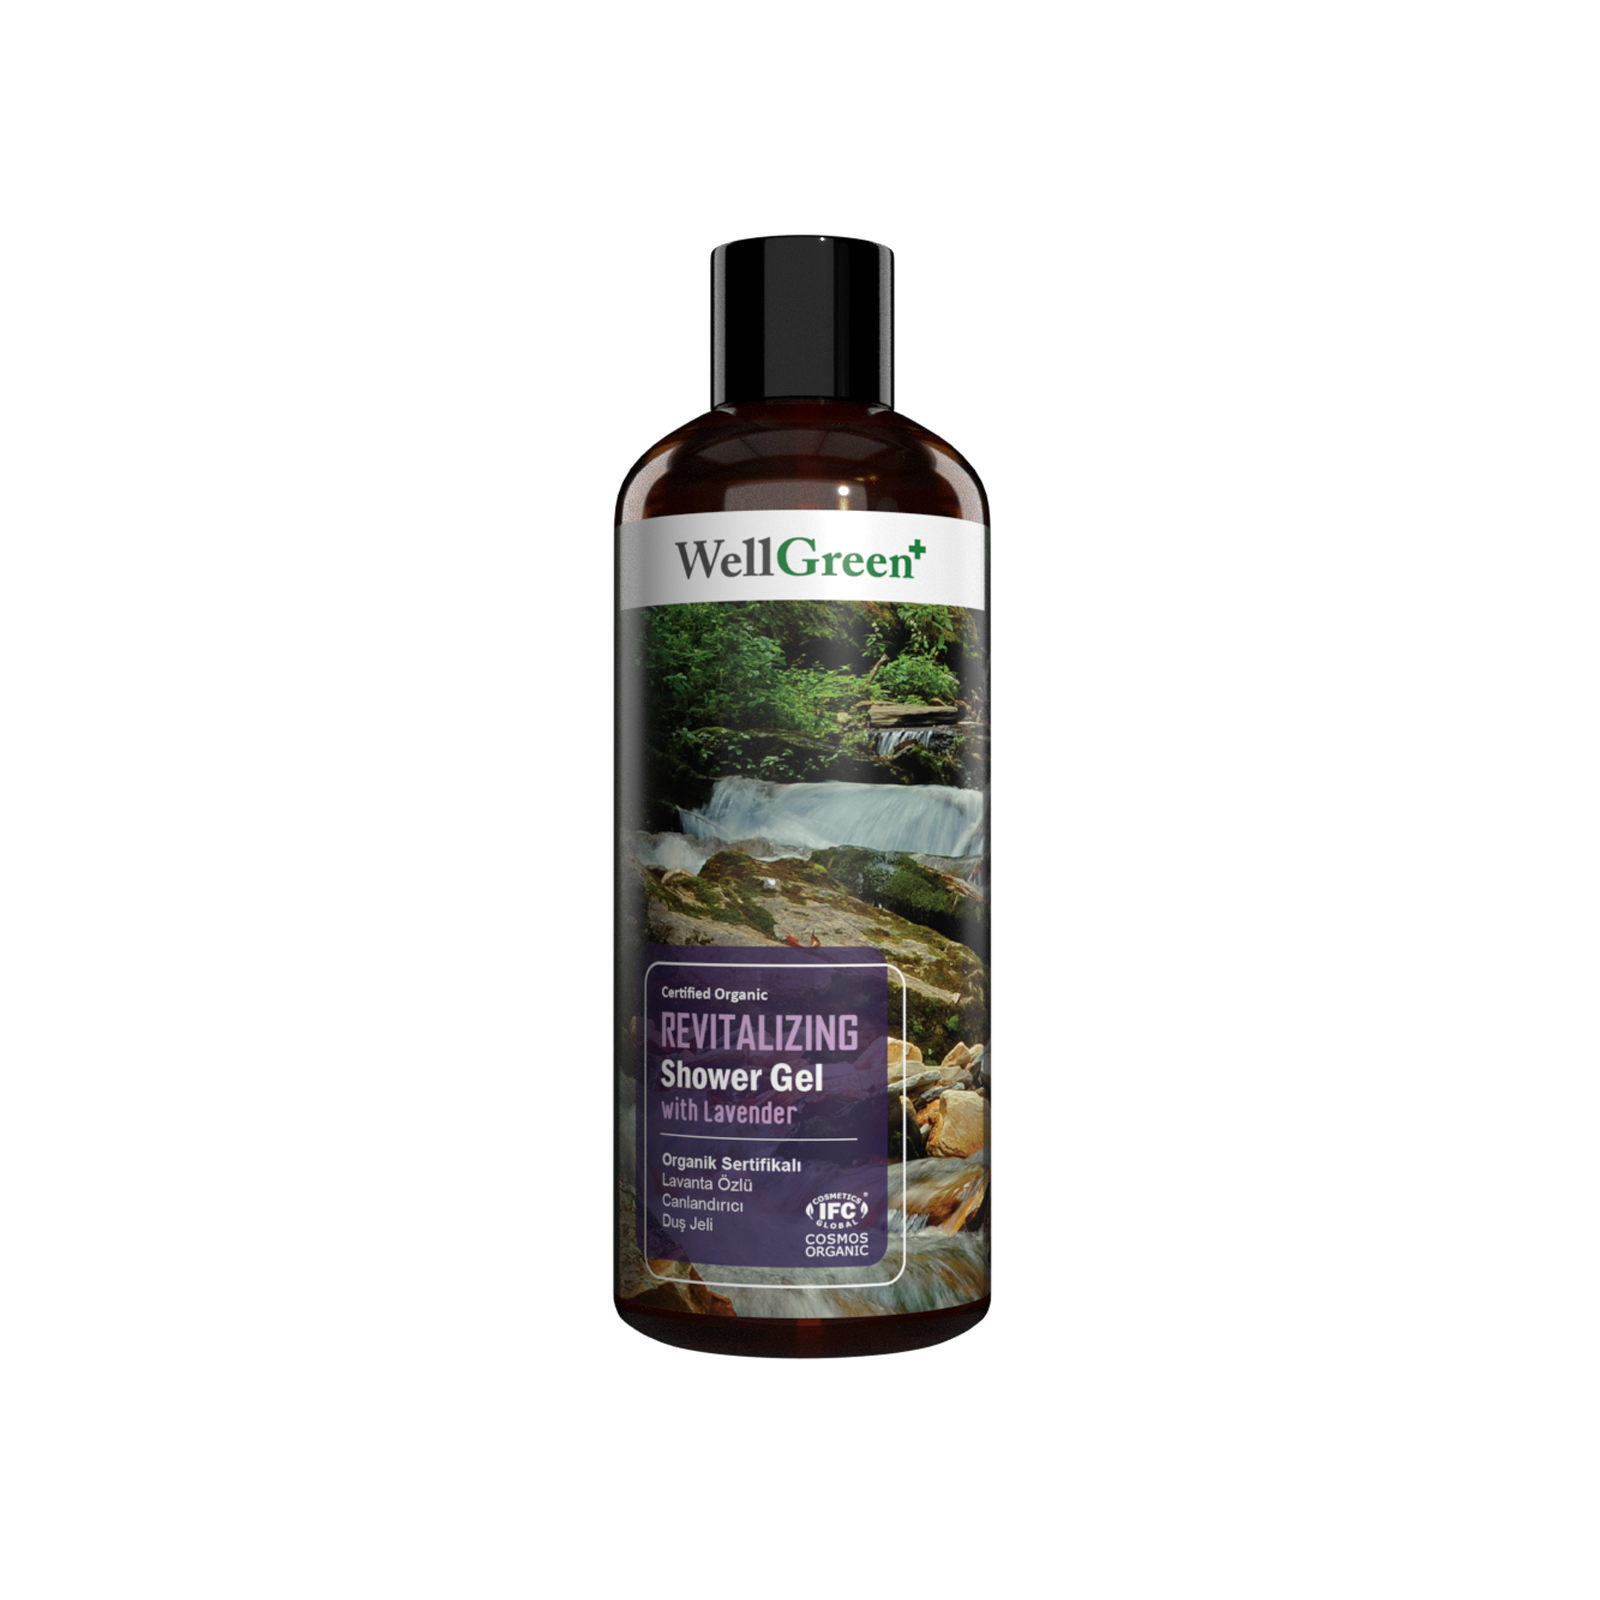 WellGreen+ Organik Sertifikalı Lavanta Özlü Canlandırıcı Duş Jeli - 400ml